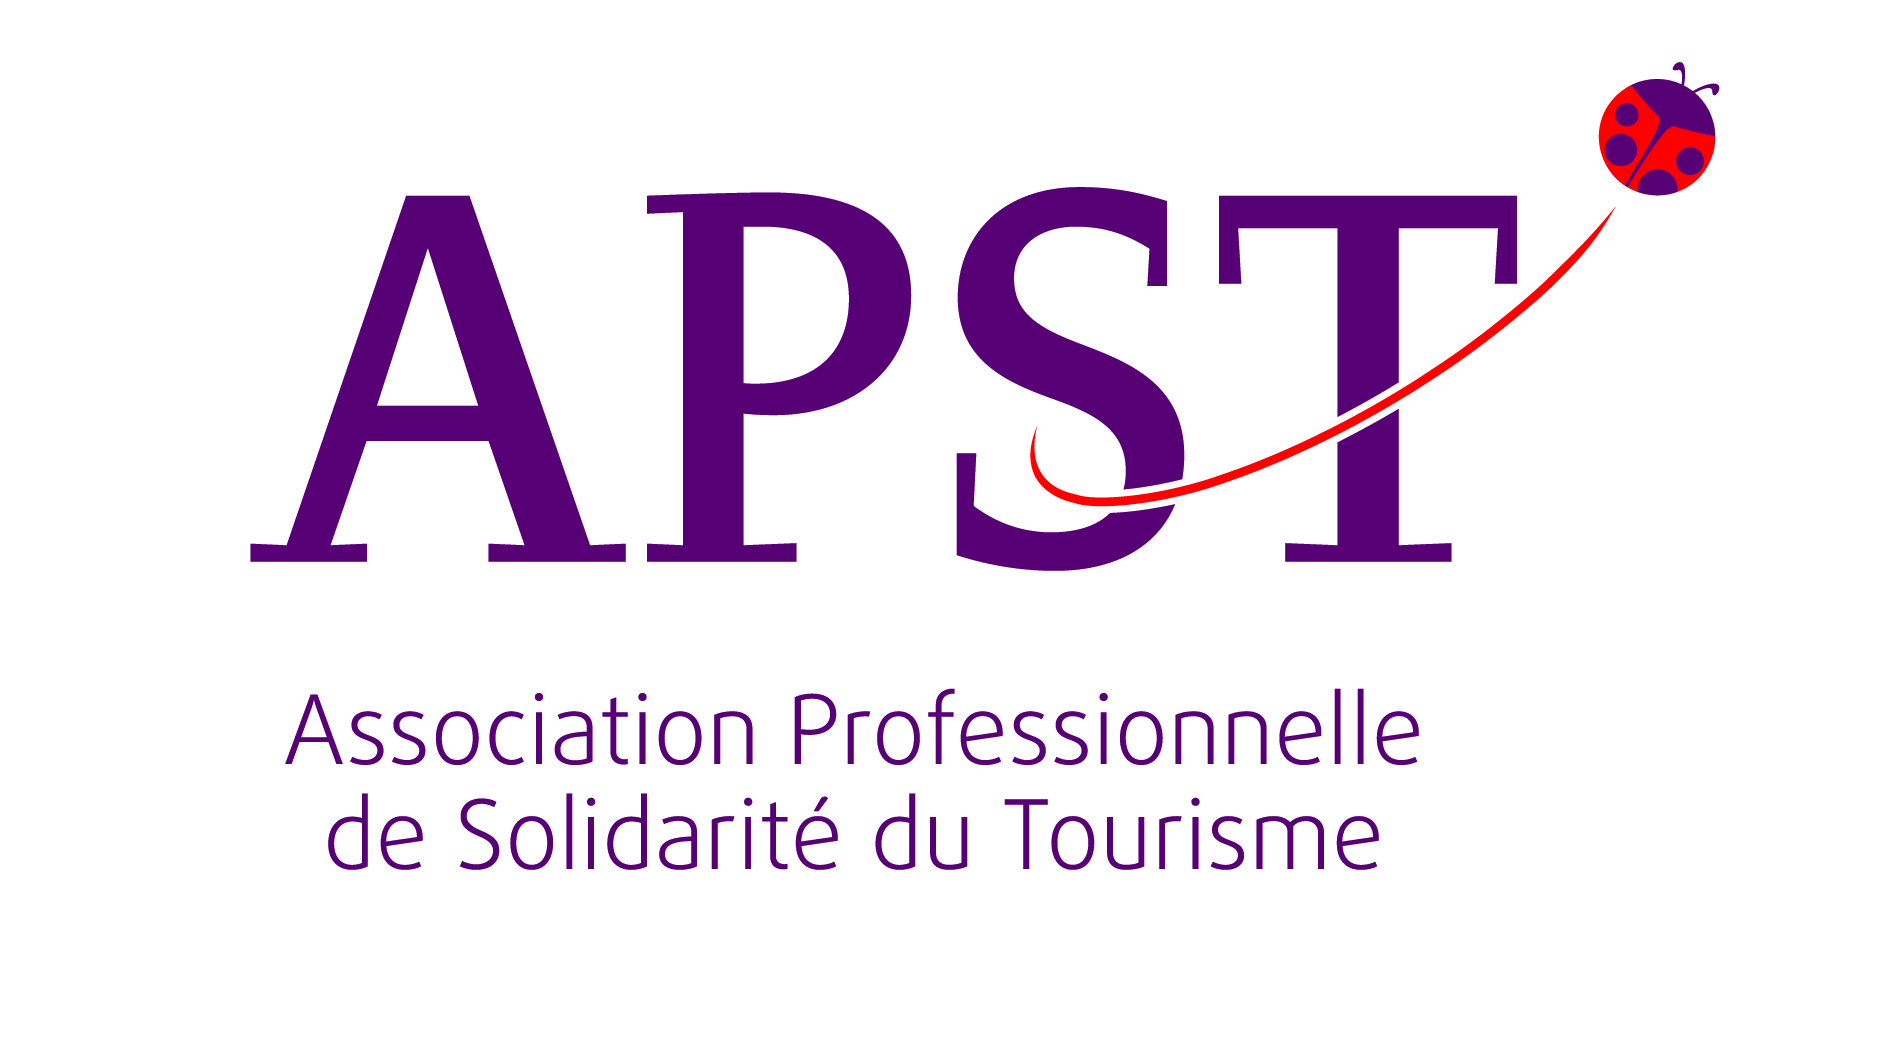 Association professionnelle de solidarité du tourisme